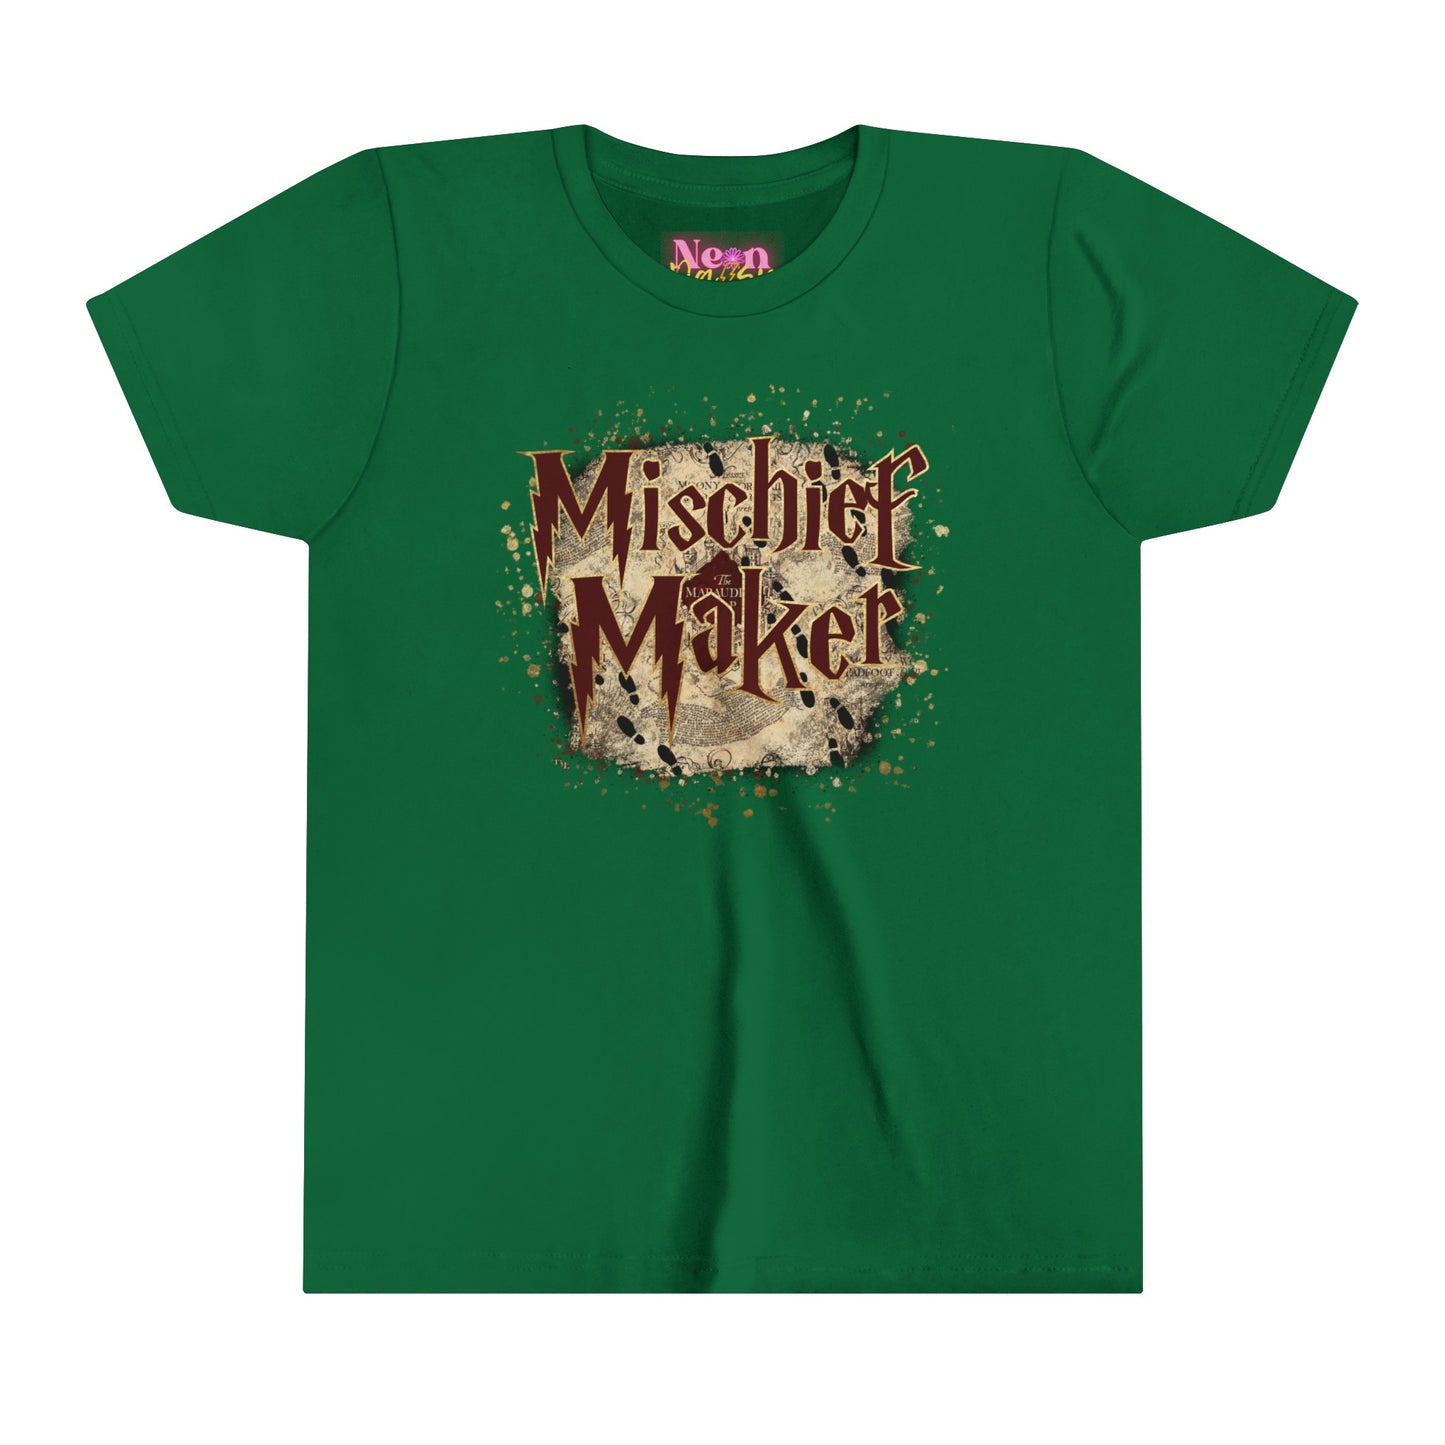 Mischief Maker // YOUTH TEE